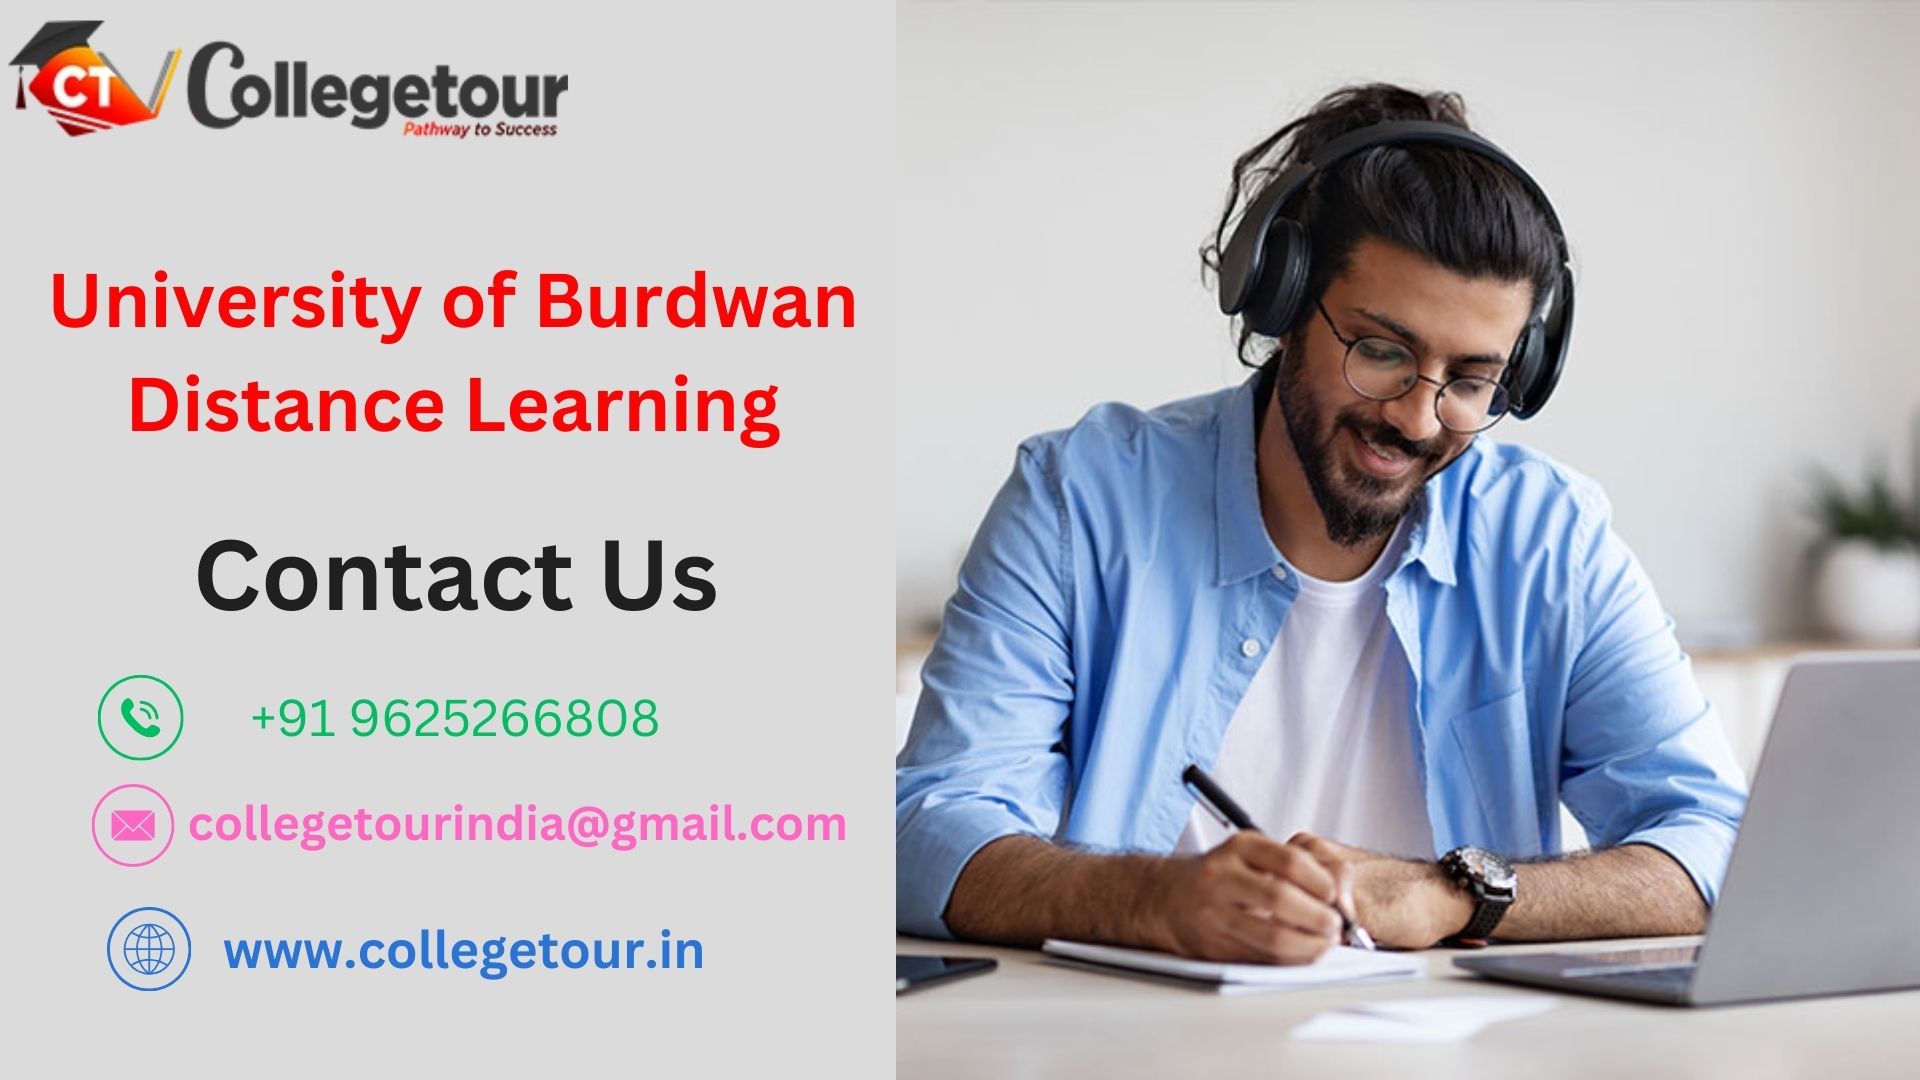 University of Burdwan Distance Learning